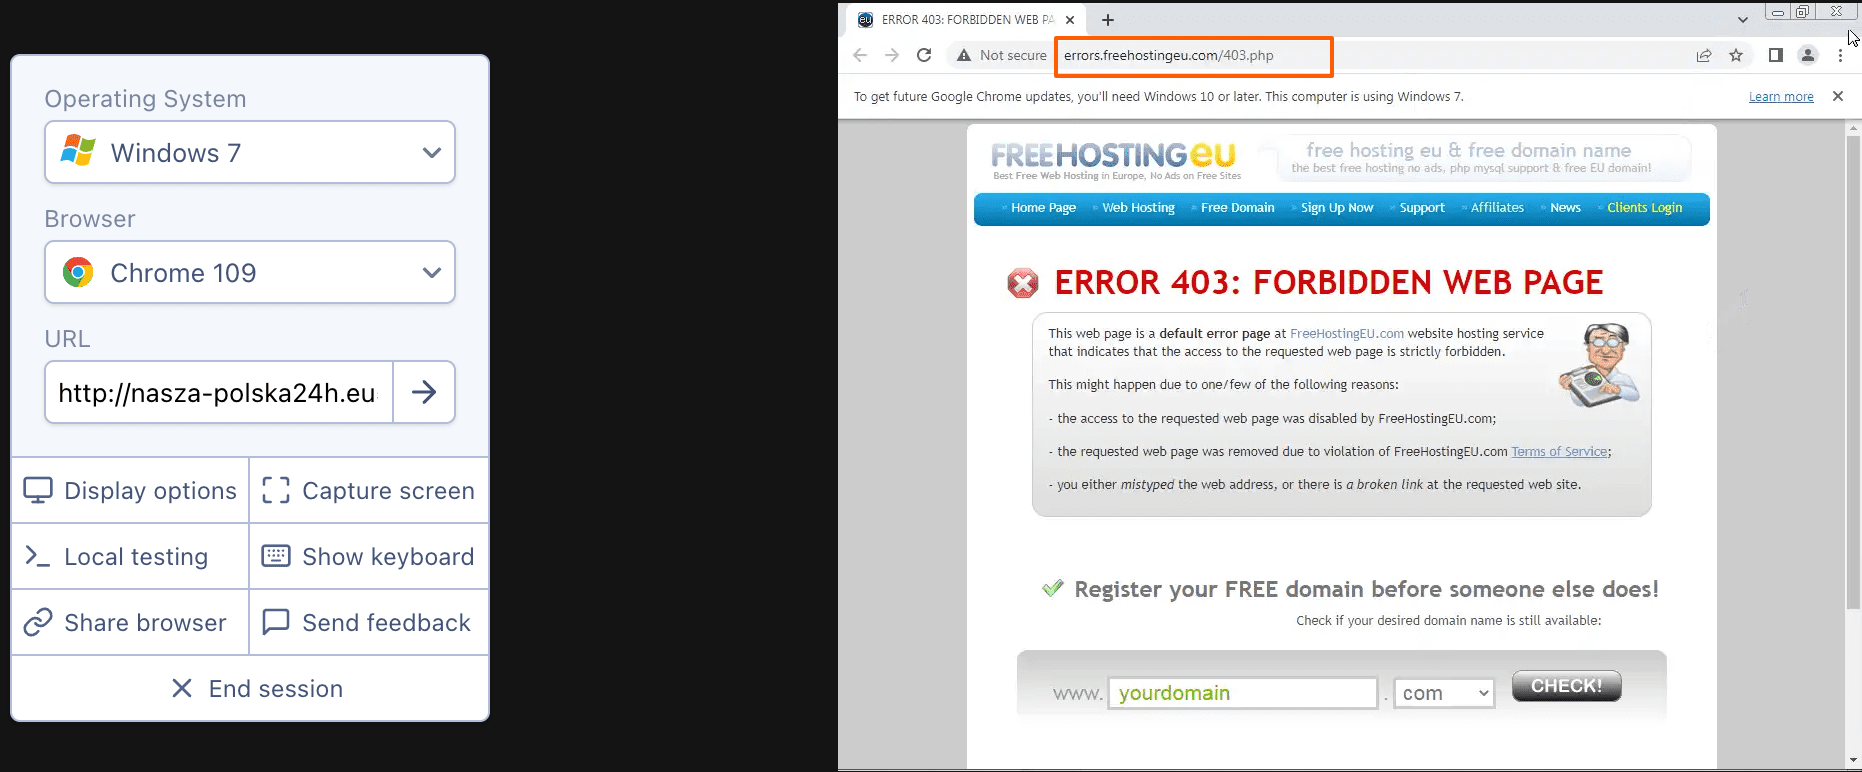 Zrzut ekranu strony browserling.com, w którym sprawdzamy stronę oszustów.